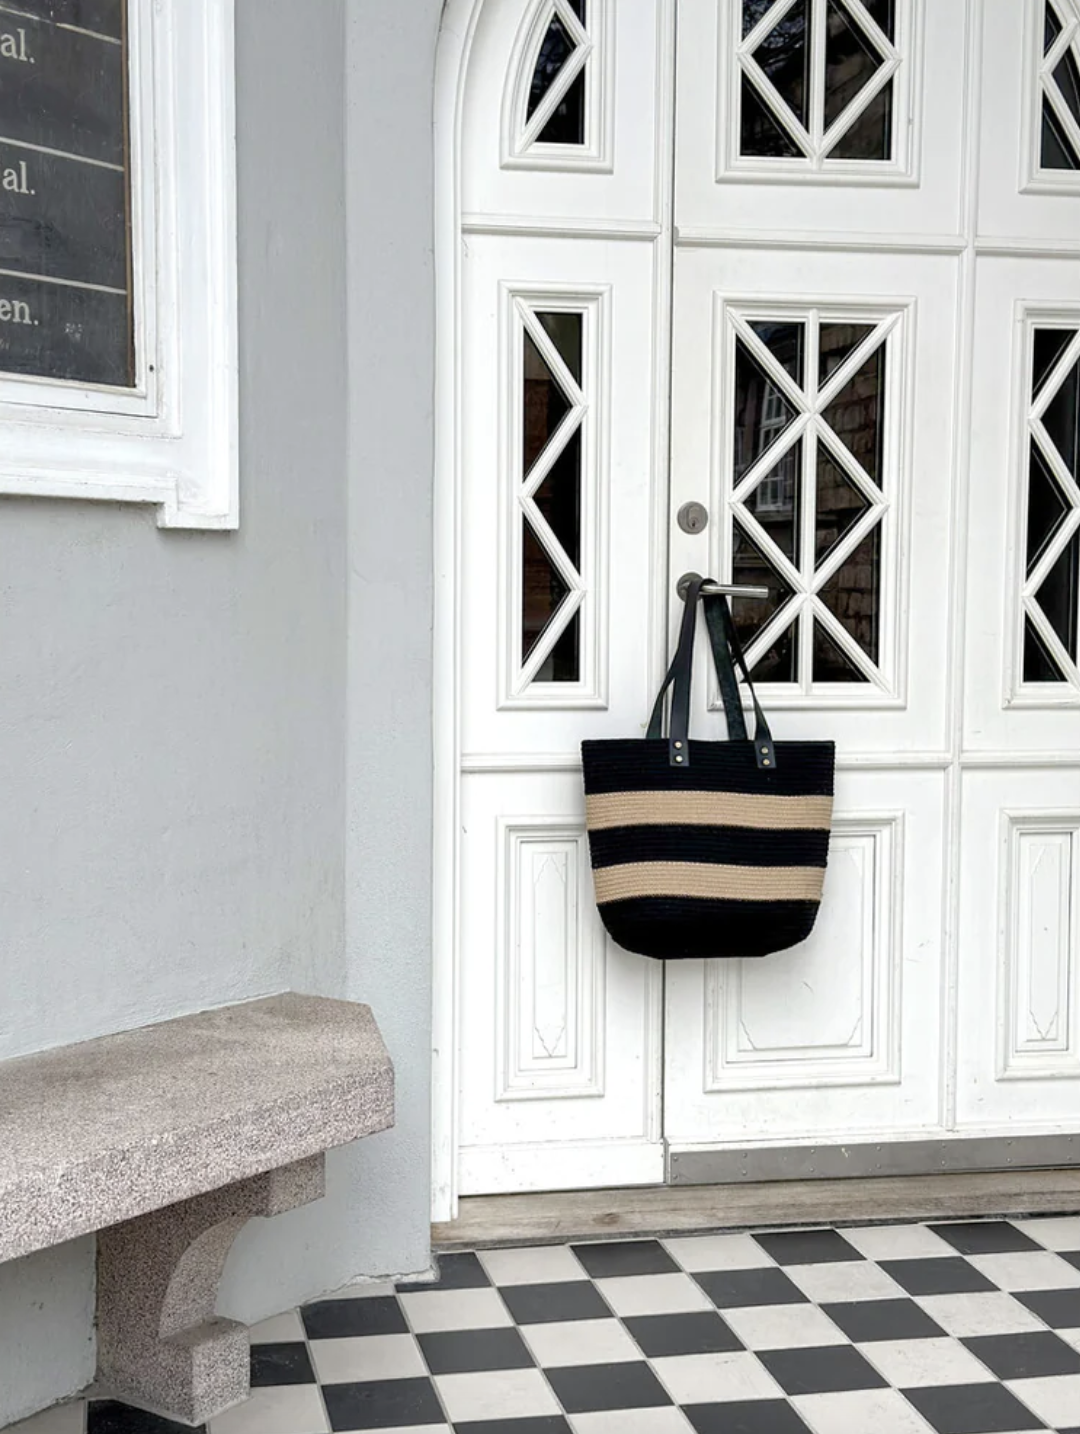 Strandväska eller shoppingbag i rep med läderhandtag, från Depeche.